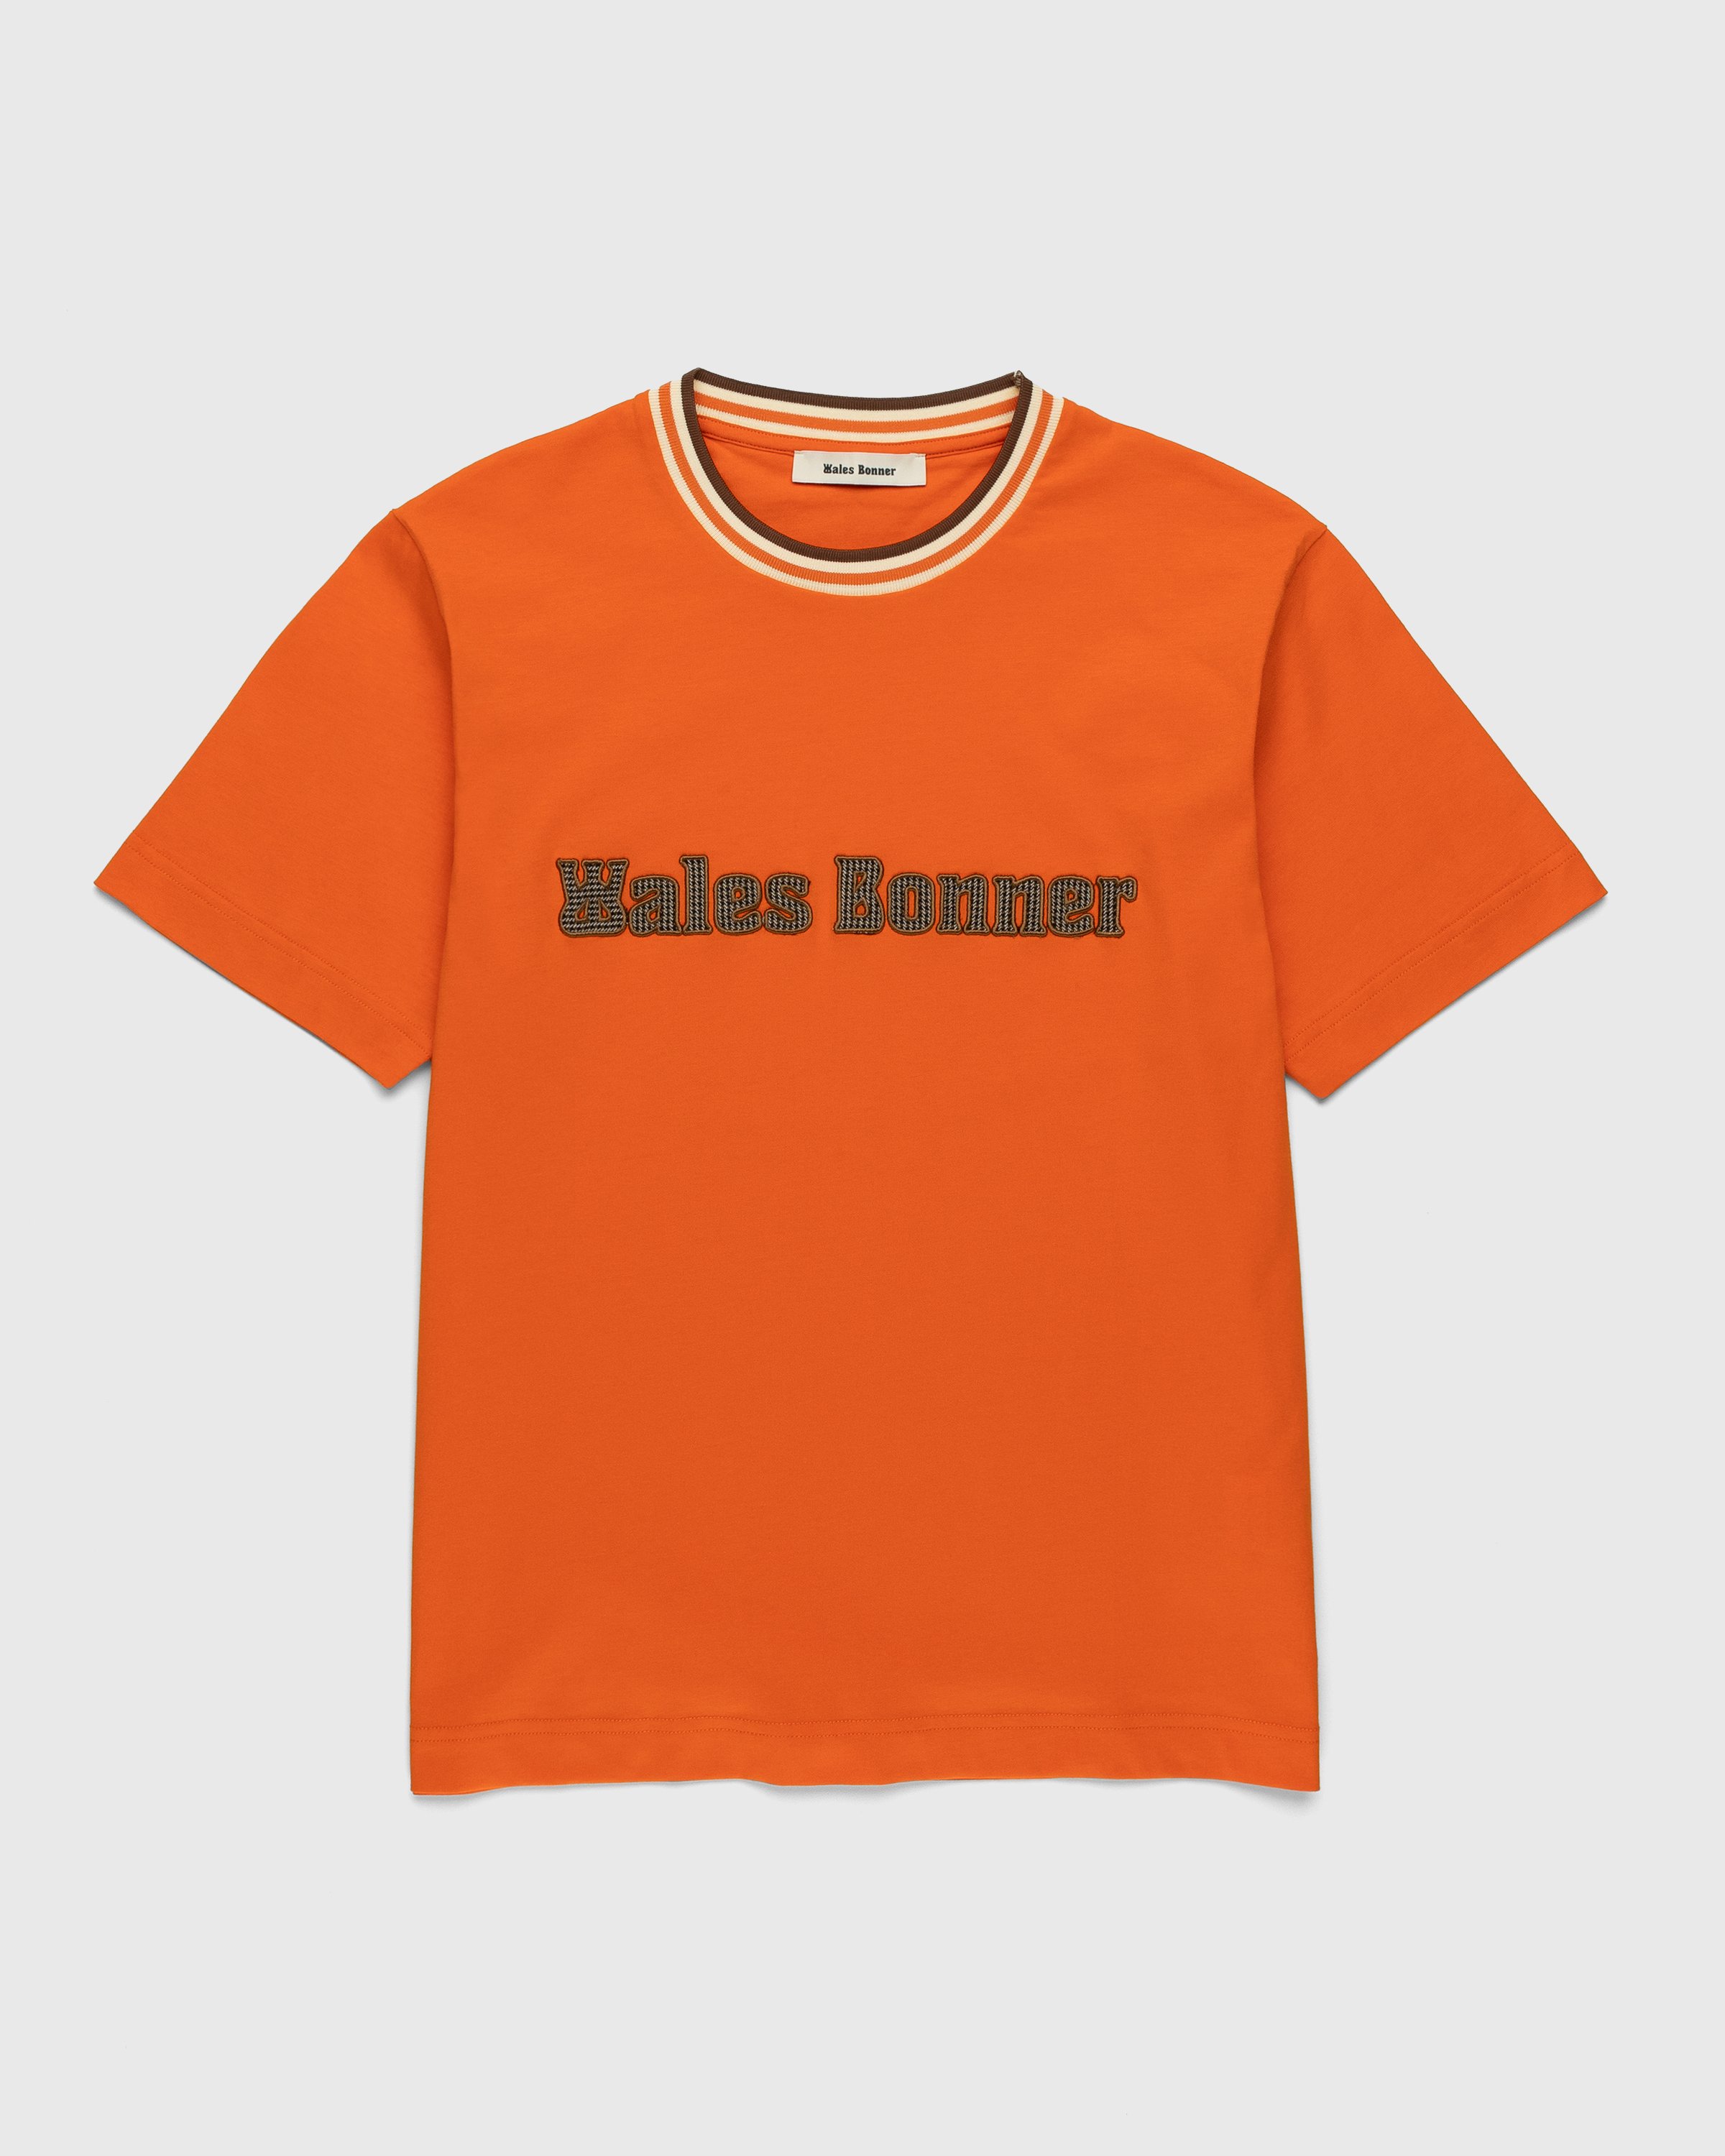 Wales Bonner - Original T-Shirt Orange - Clothing - Orange - Image 1